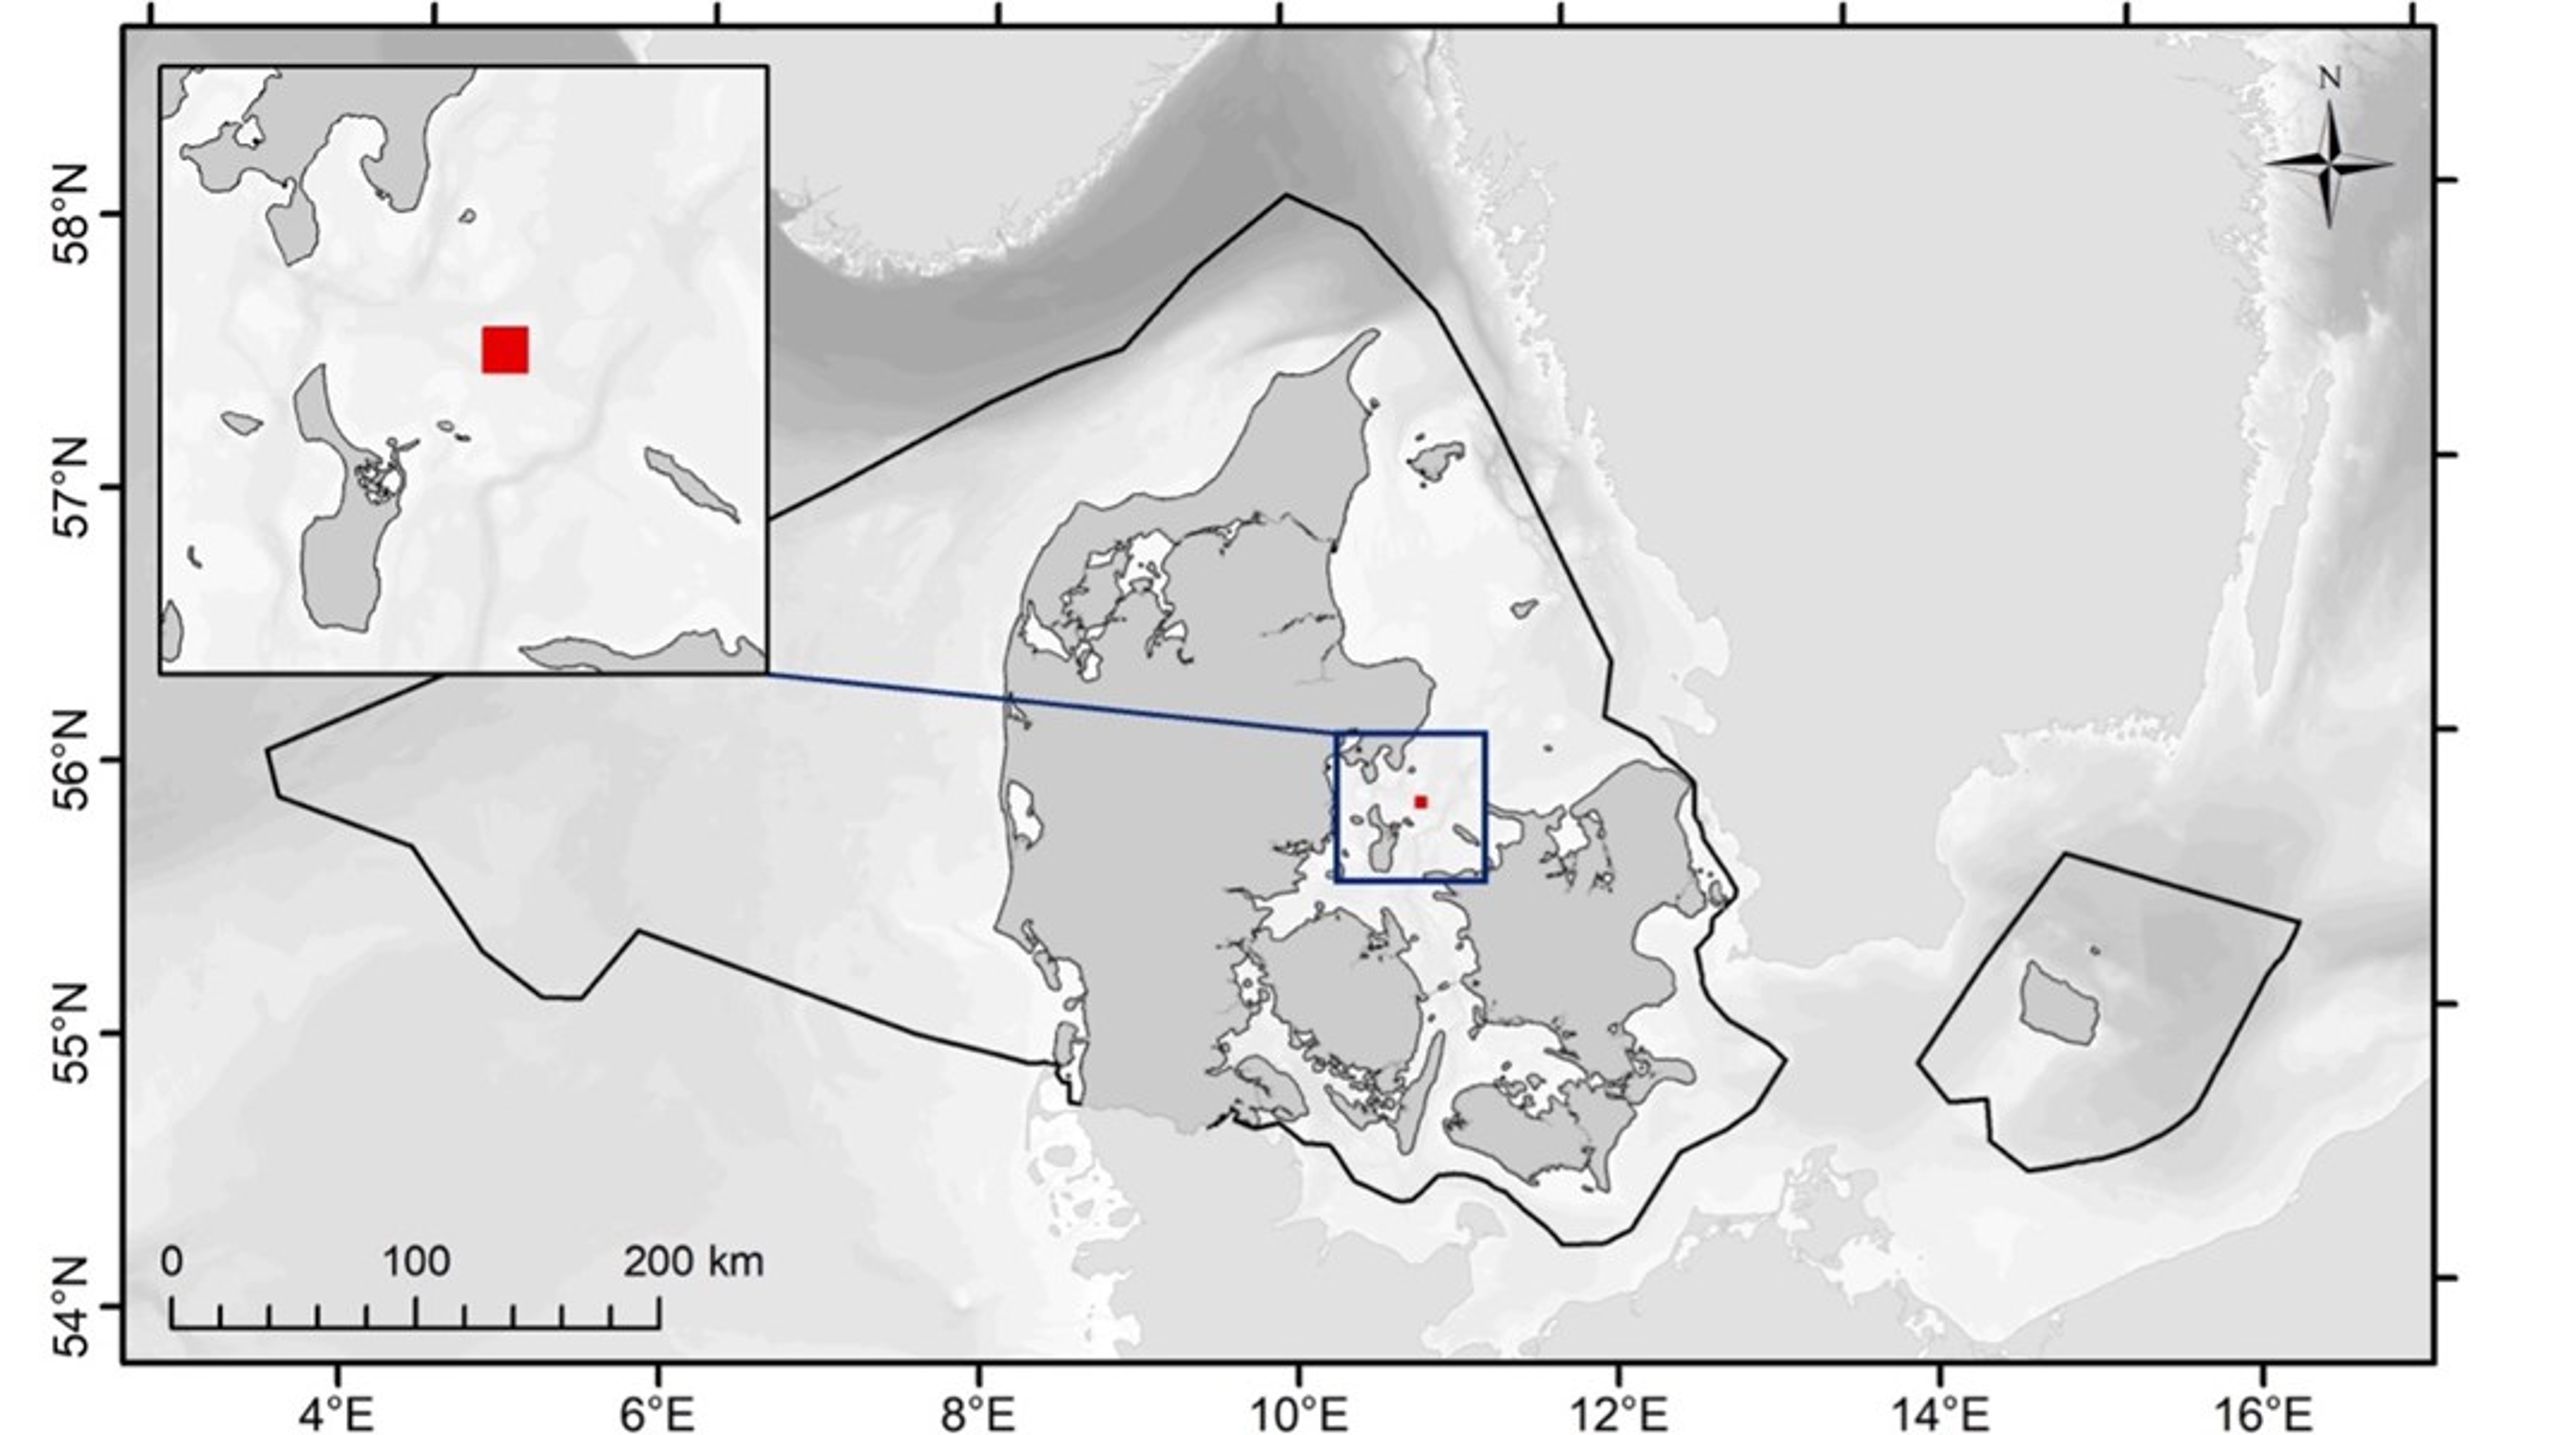 Den sorte line viser den danske eksklusiv økonomisk zone, mens den røde firkant (23,5 km2) angiver det areal, som skal anvendes til muslingeopdræt ved en tidobling af den nuværende produktion af blåmuslinger til konsum.